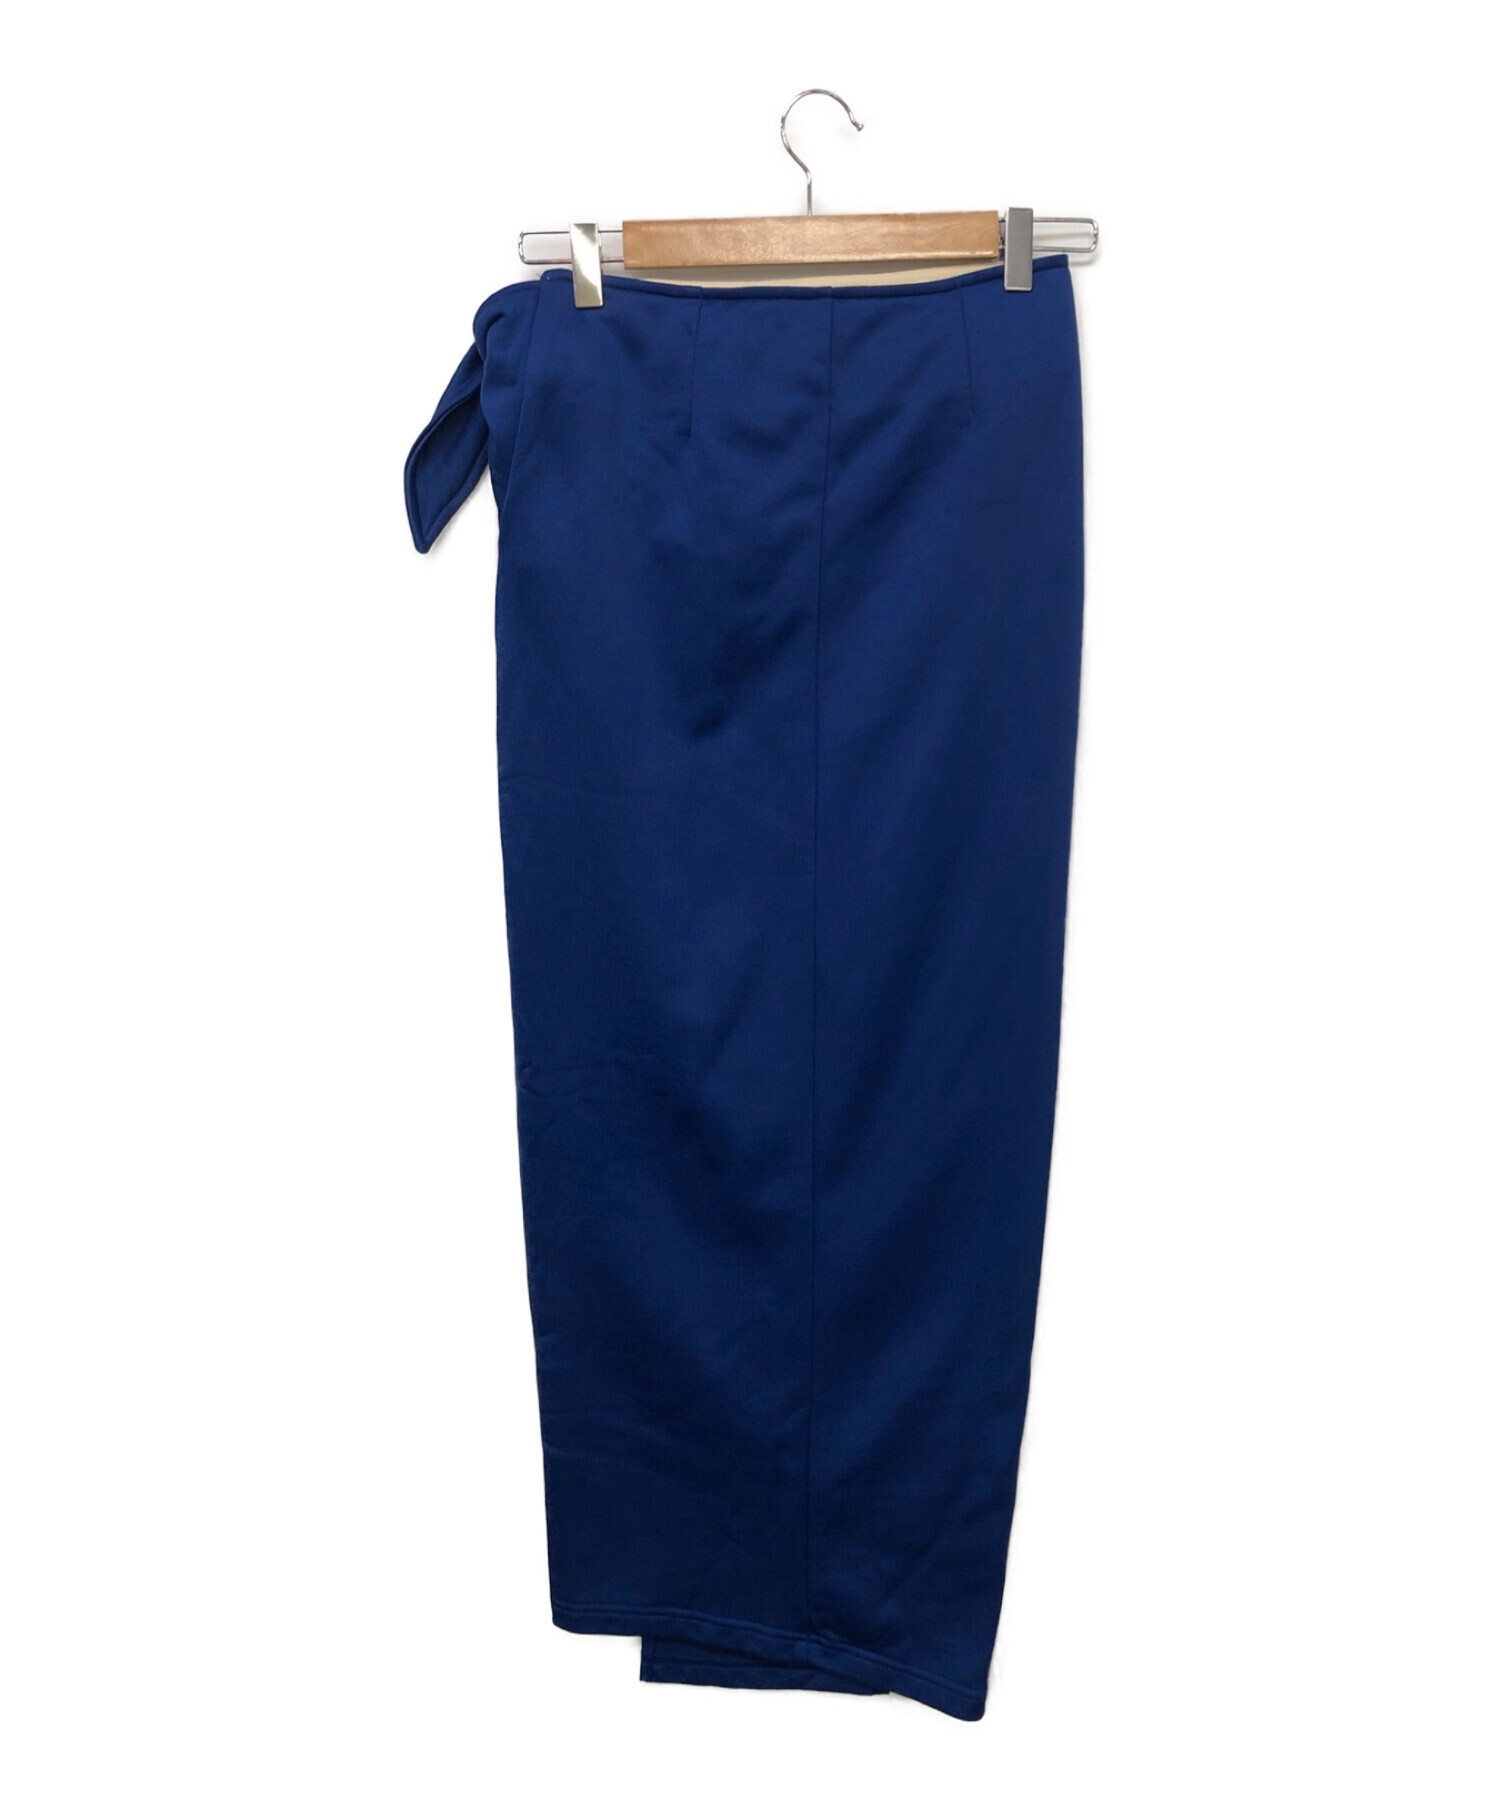 ISABEL MARANT ETOILE (イザベルマランエトワール) コットンナイロンジャージー ラップスカート ブルー サイズ:36